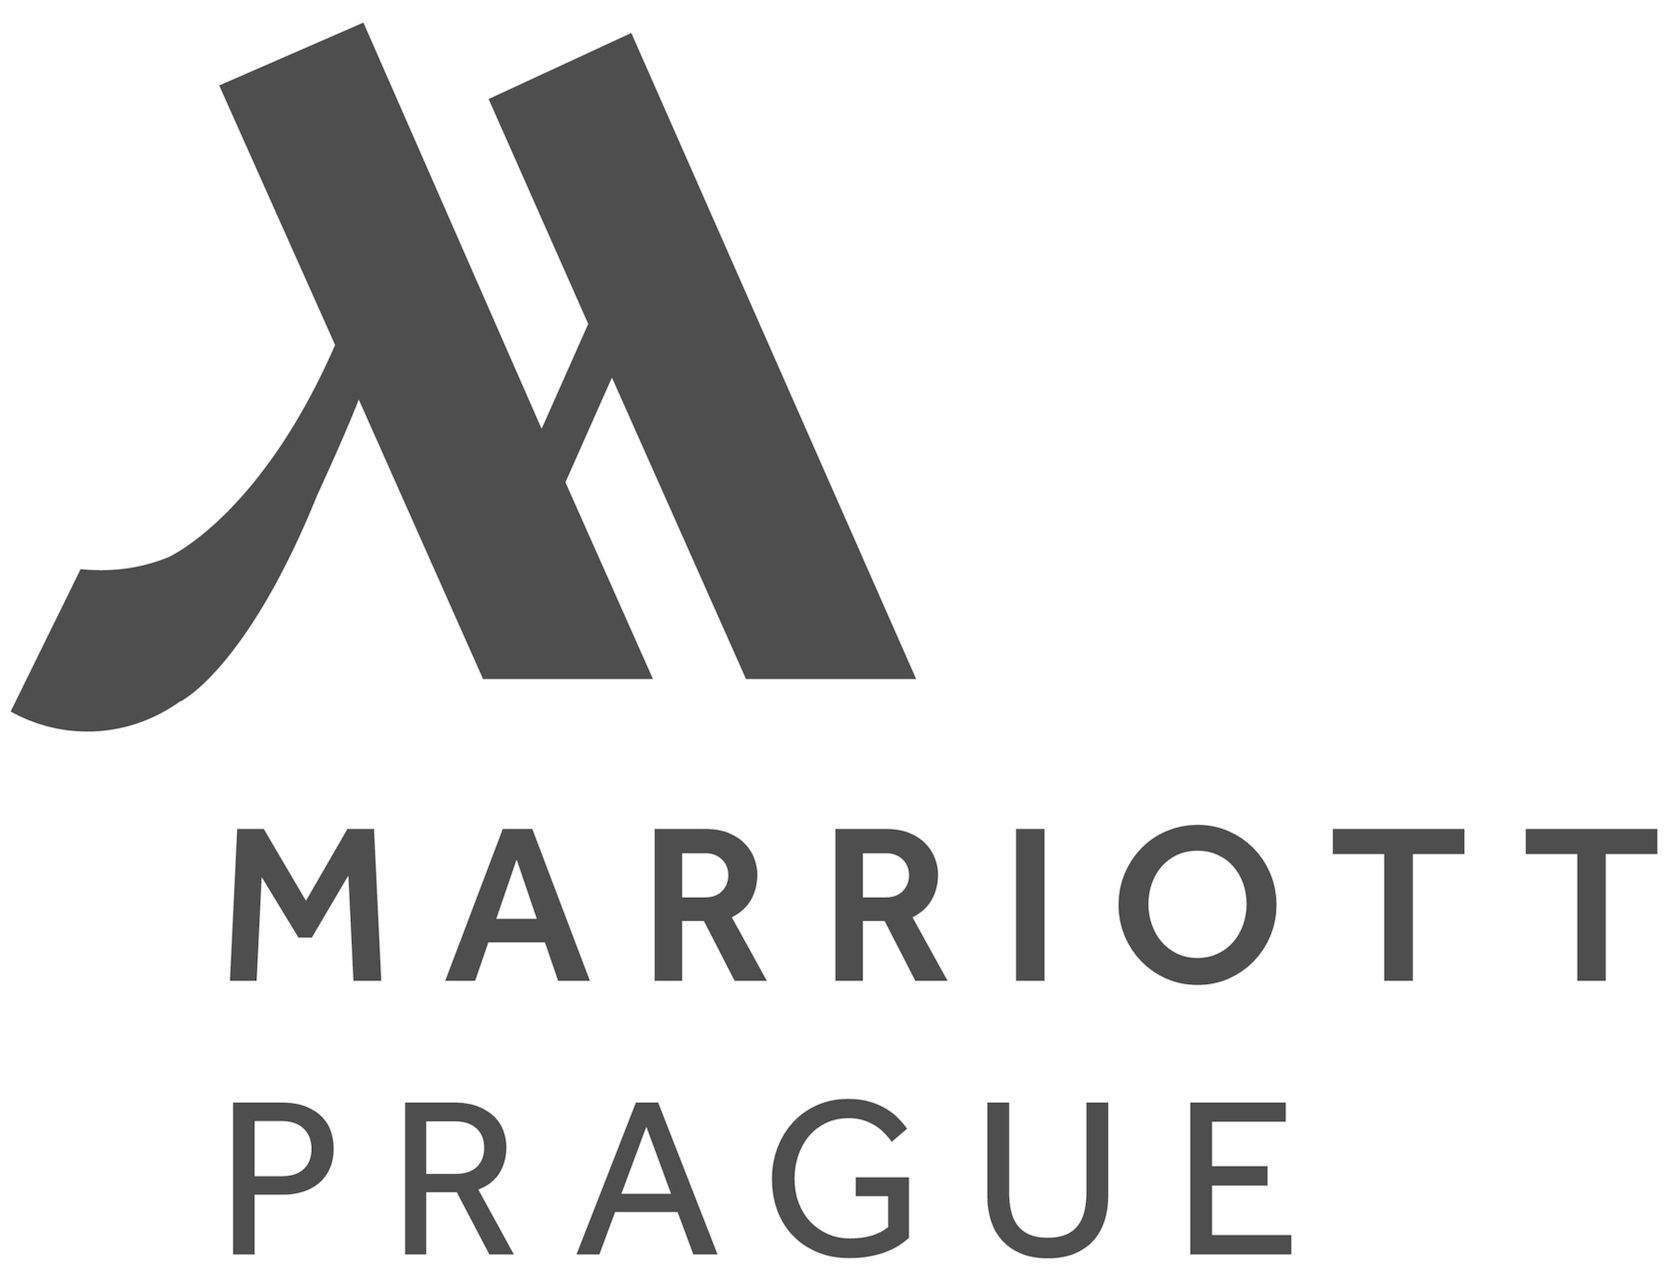 Prague Marriott Hotel